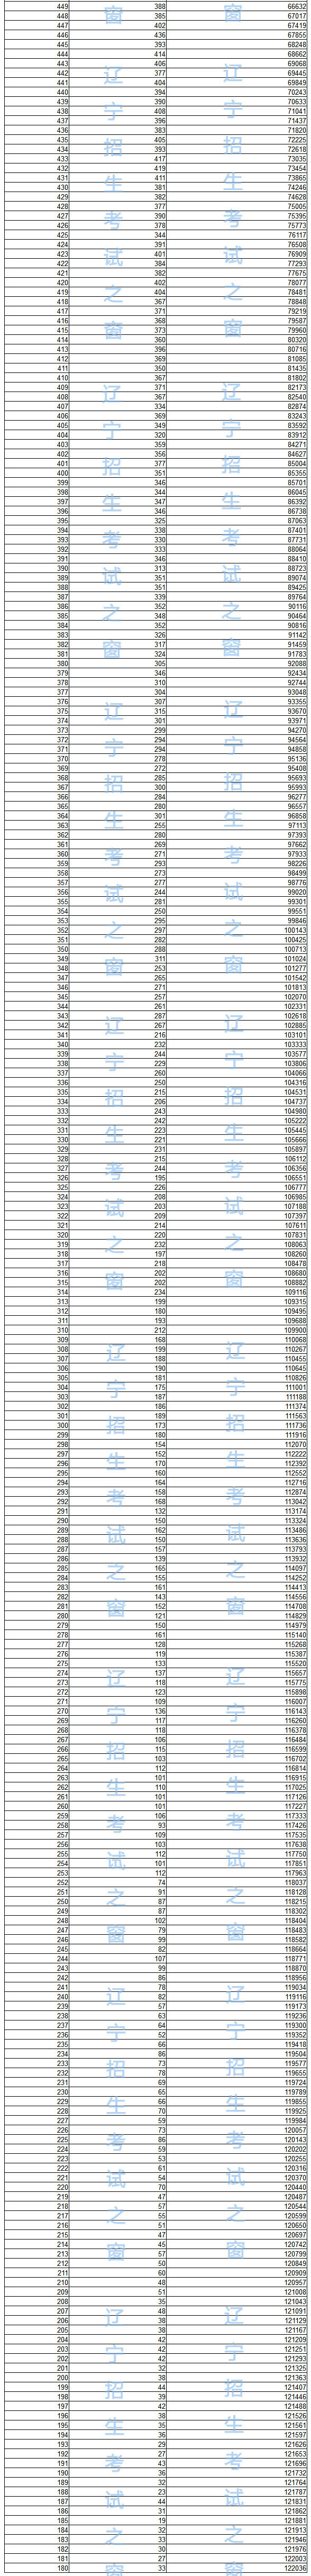 2018年辽宁省普通高考成绩一分一段统计表 （理工）;辽宁高考;辽宁高考分段表;辽宁高考;2018高考